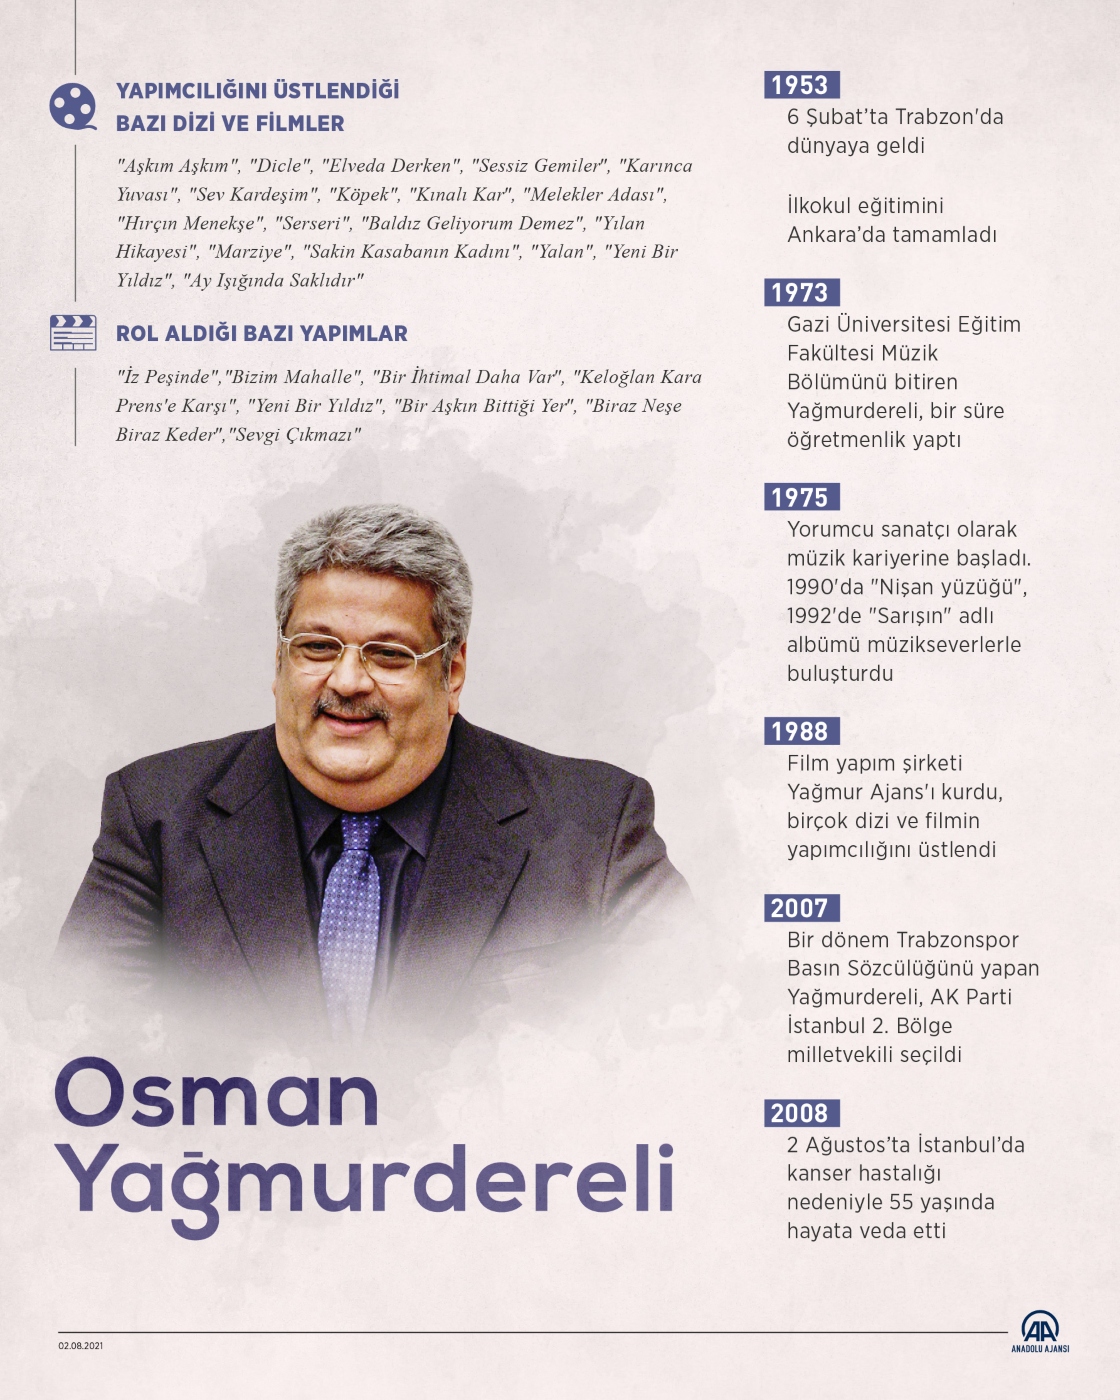 Türk müziğinin güler yüzü: Osman Yağmurdereli